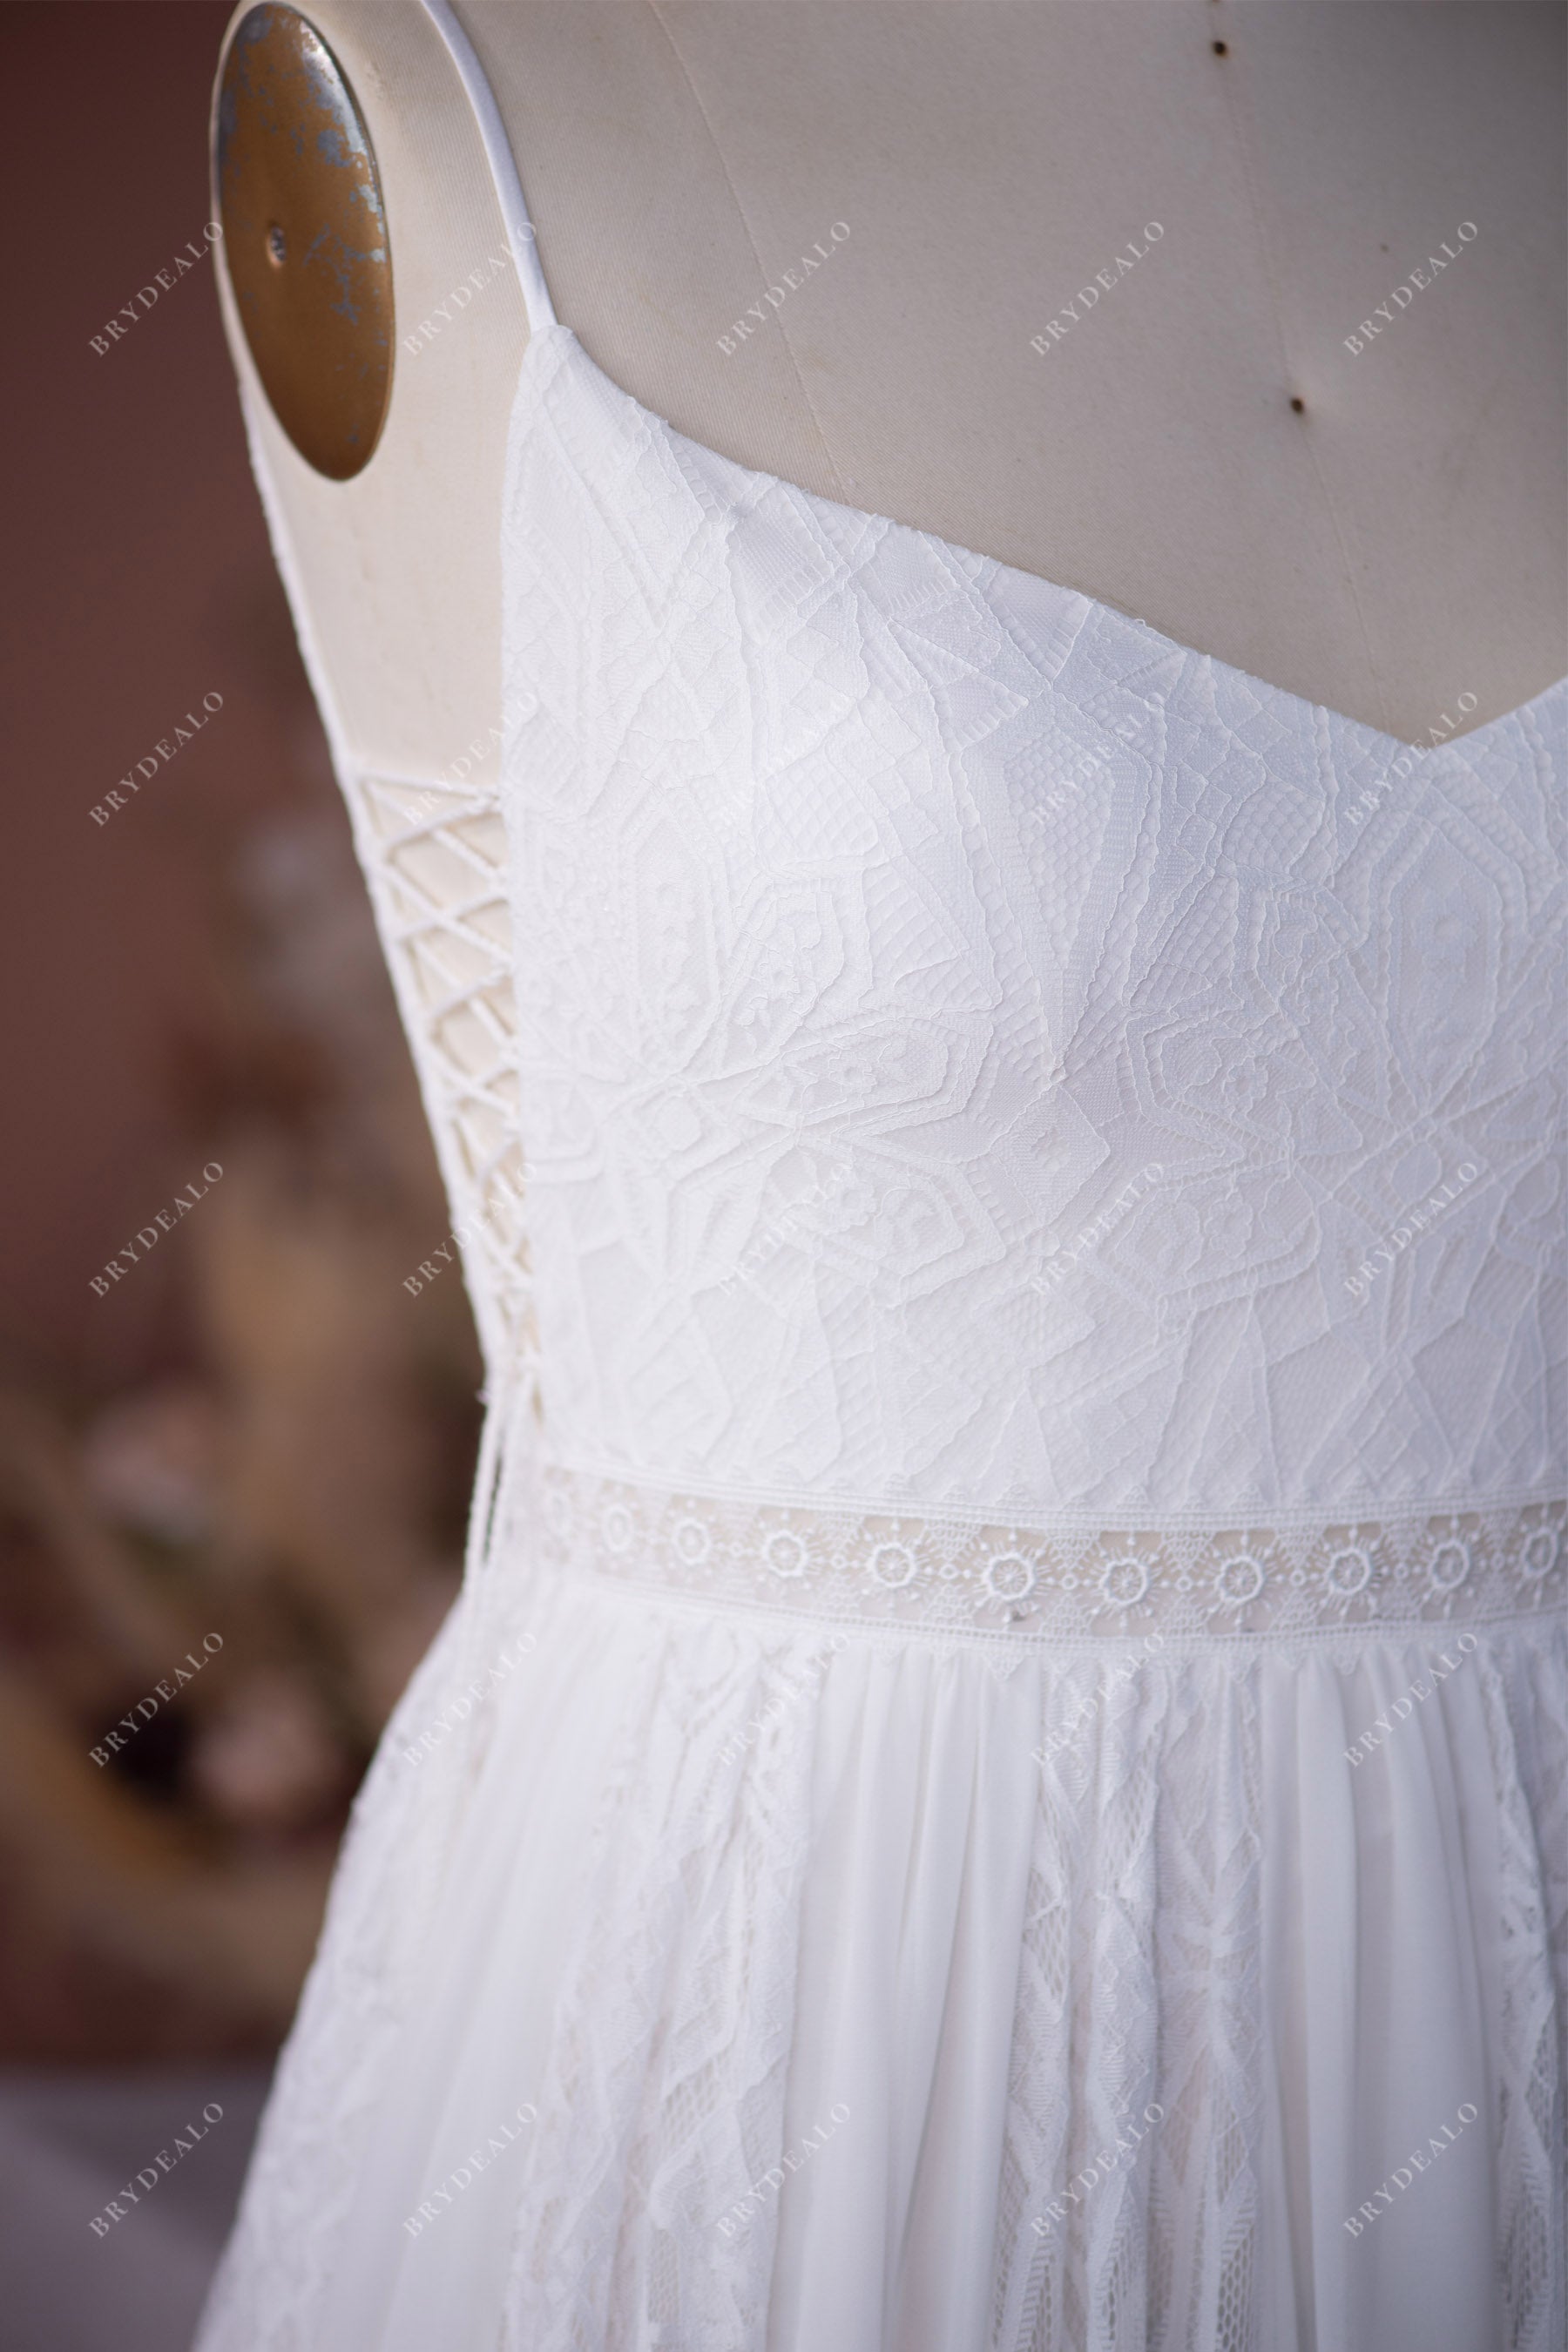 wholesale plus size tassel lace chiffon wedding dress